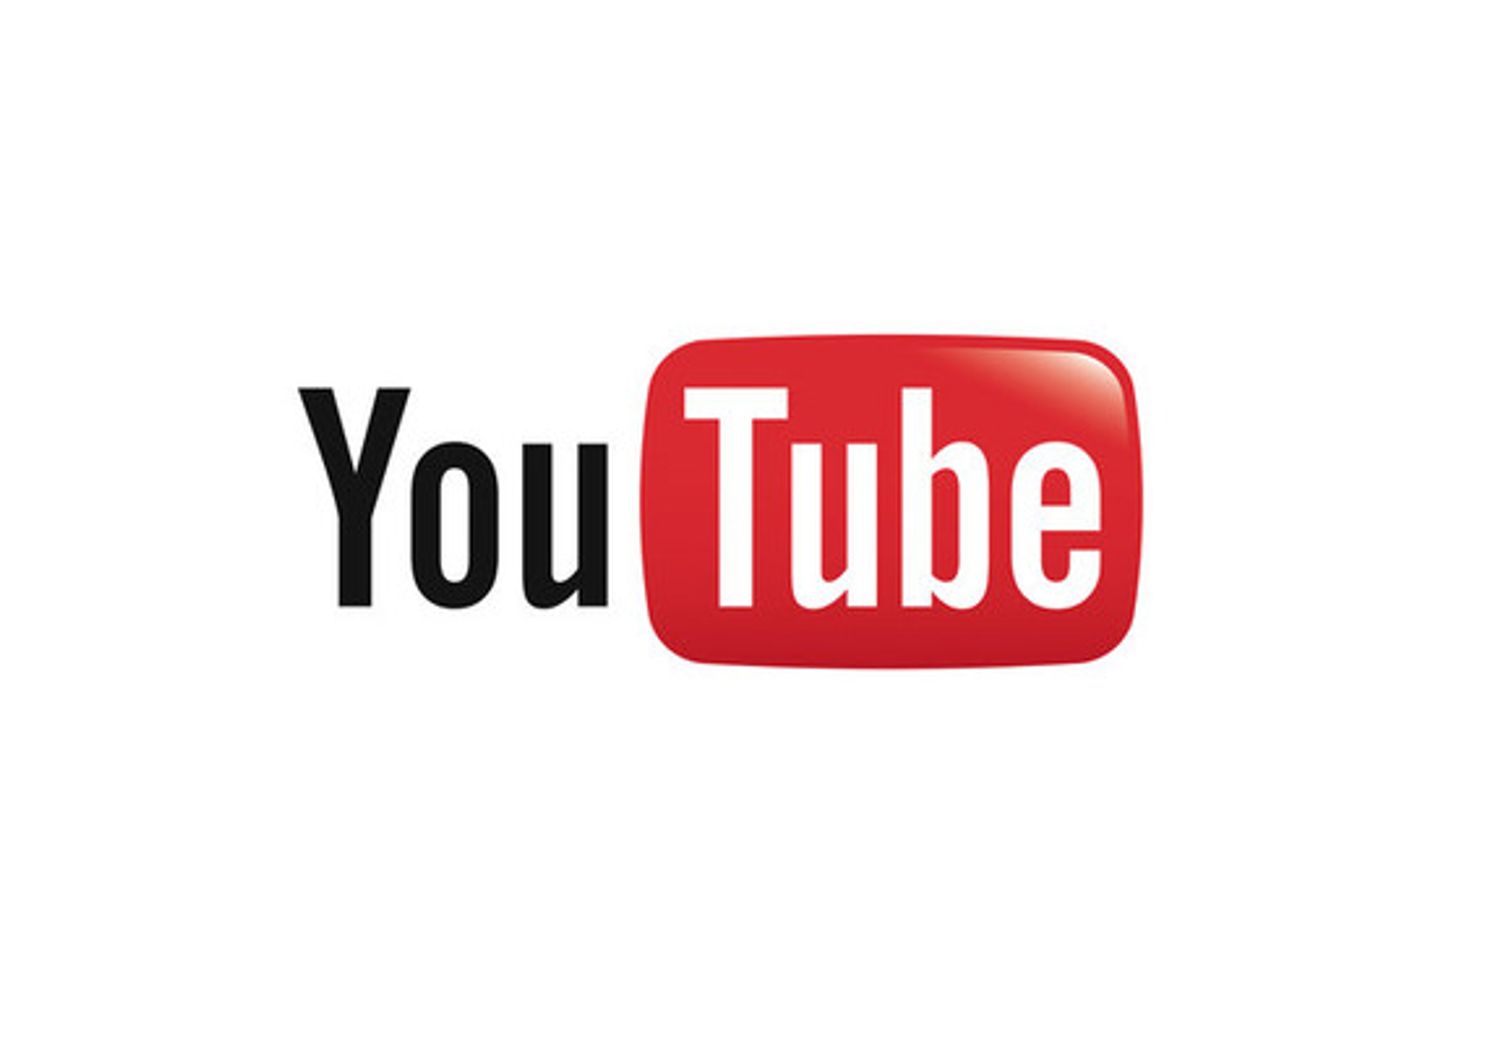 &nbsp;Youtube logo